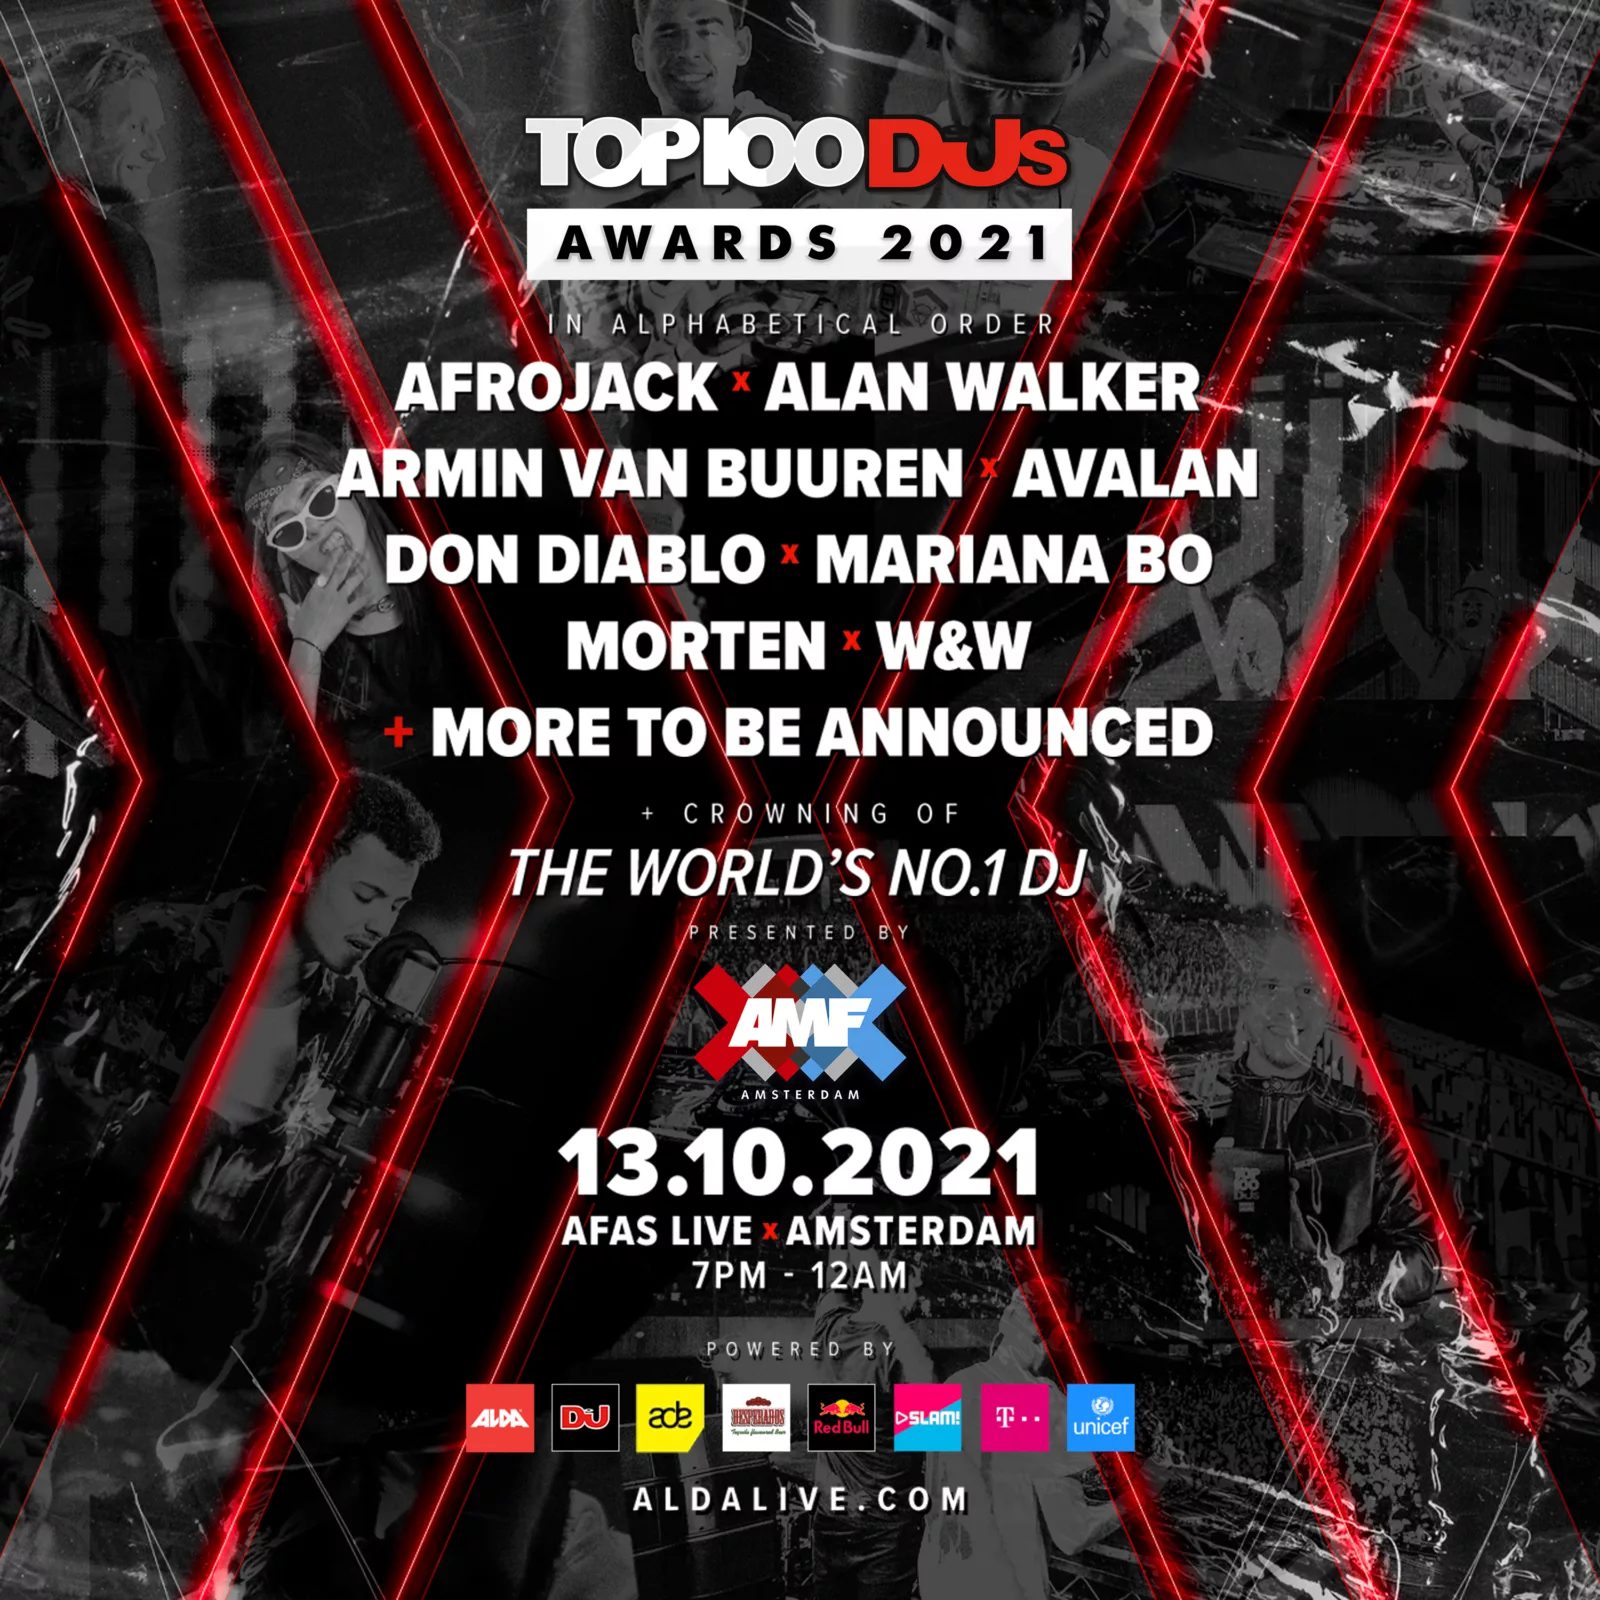 Bering strædet Antarktis Uregelmæssigheder DJ Mag Has Officially Confirmed Their Top 100 DJs Awards Show For ADE - EDM  Maniac